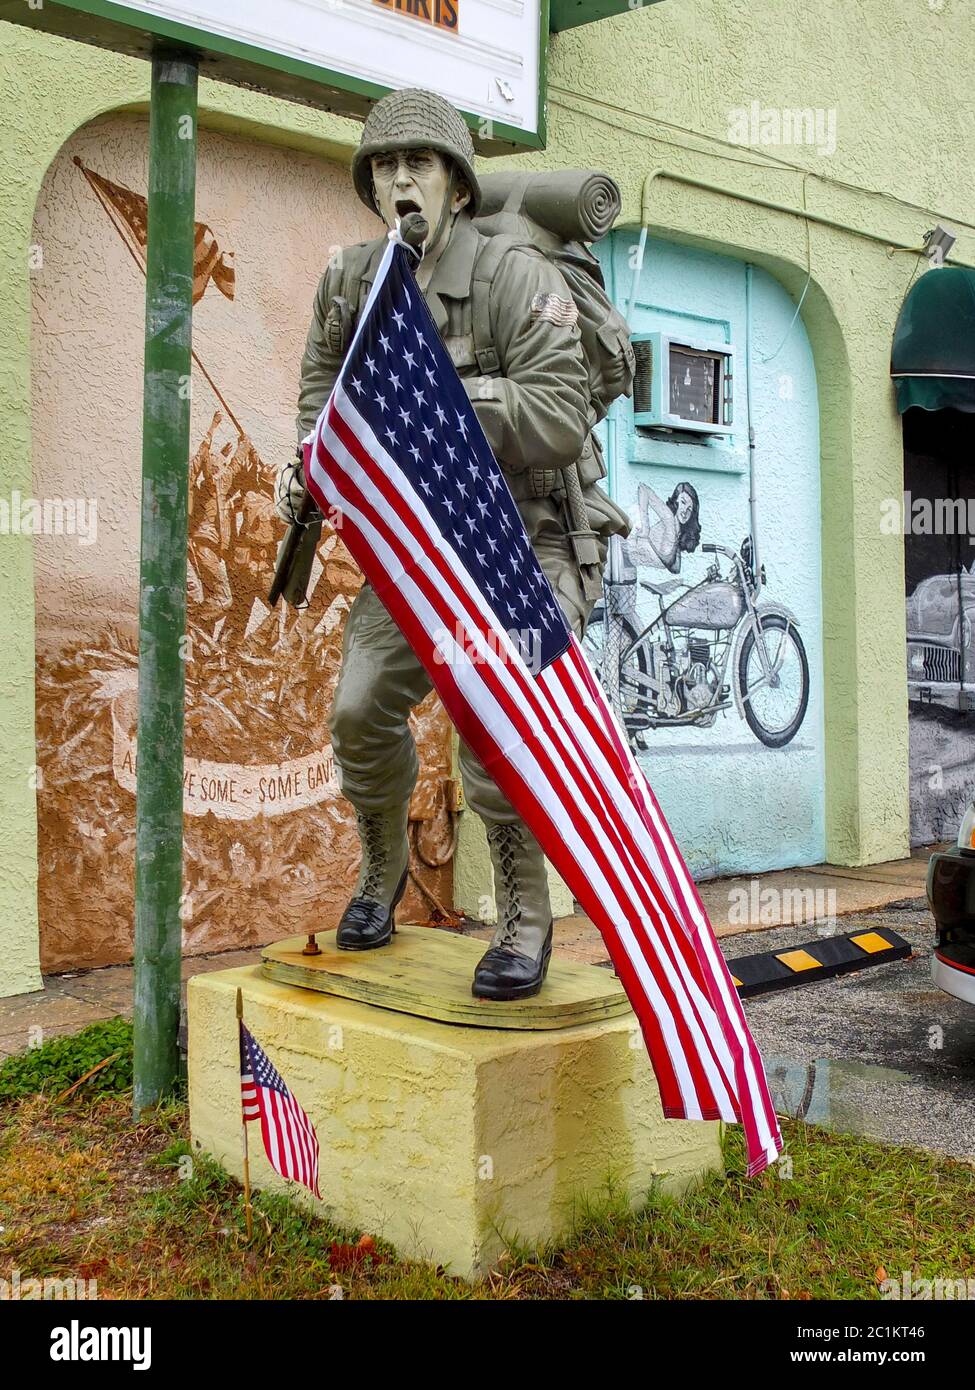 Eine Statue eines schreienden US-Soldaten mit US-Flagge wird mit einem Wandgemälde der Schlacht von Iwo Jima und einem Pin-up-Mädchen mit einem Motorrad in t gegenübergestellt Stockfoto